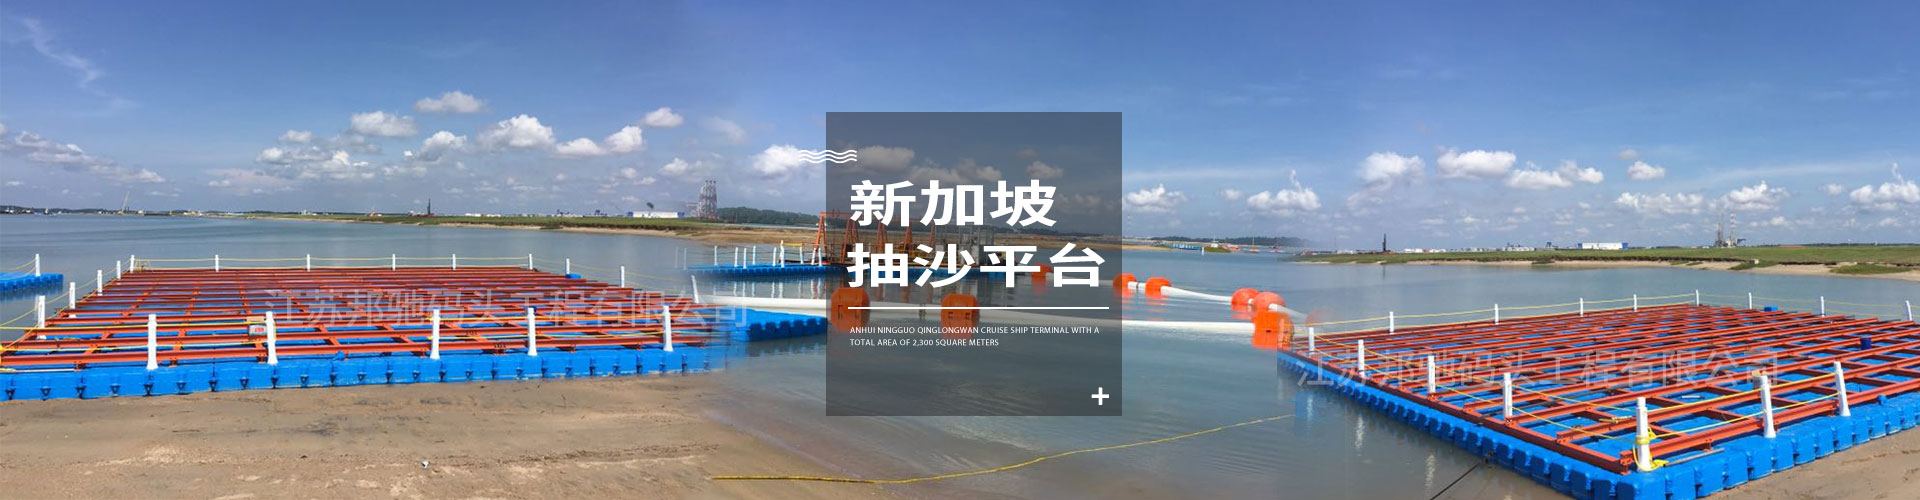 江苏邦驰码头工程有限公司浮筒客户案例-新加坡抽沙平台